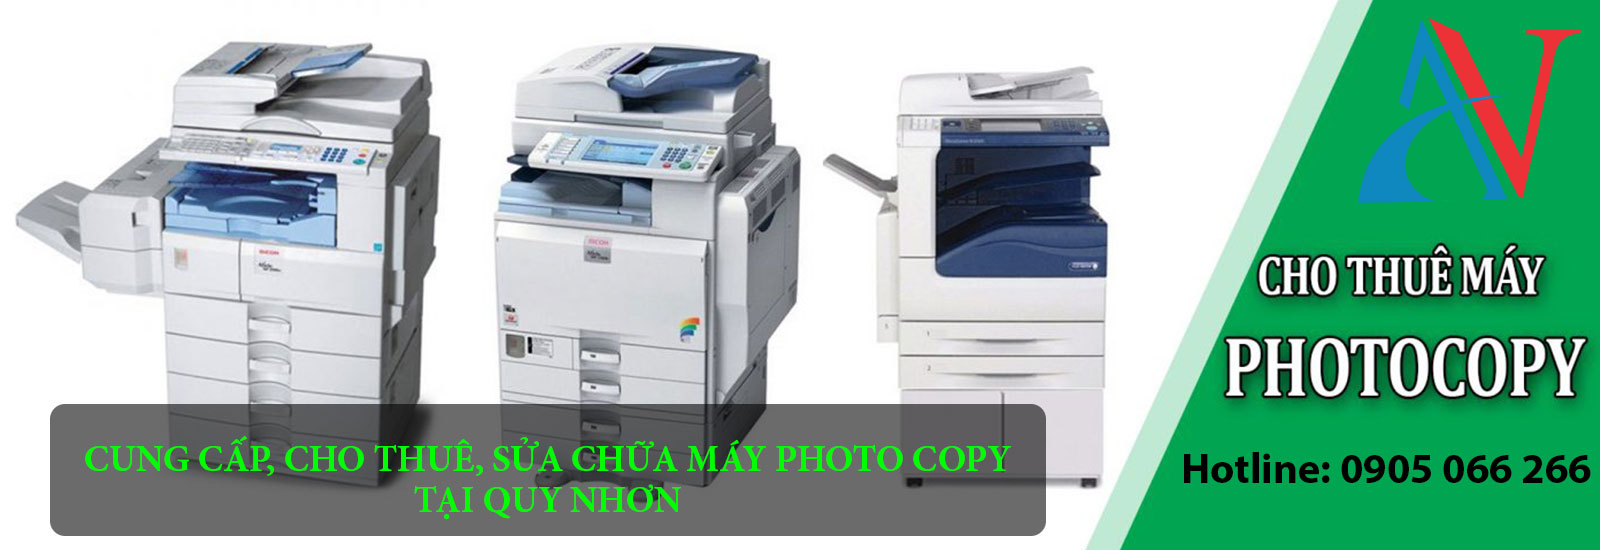 Cho Thuê Máy Photocopy tại Quy Nhơn-0905 066 266